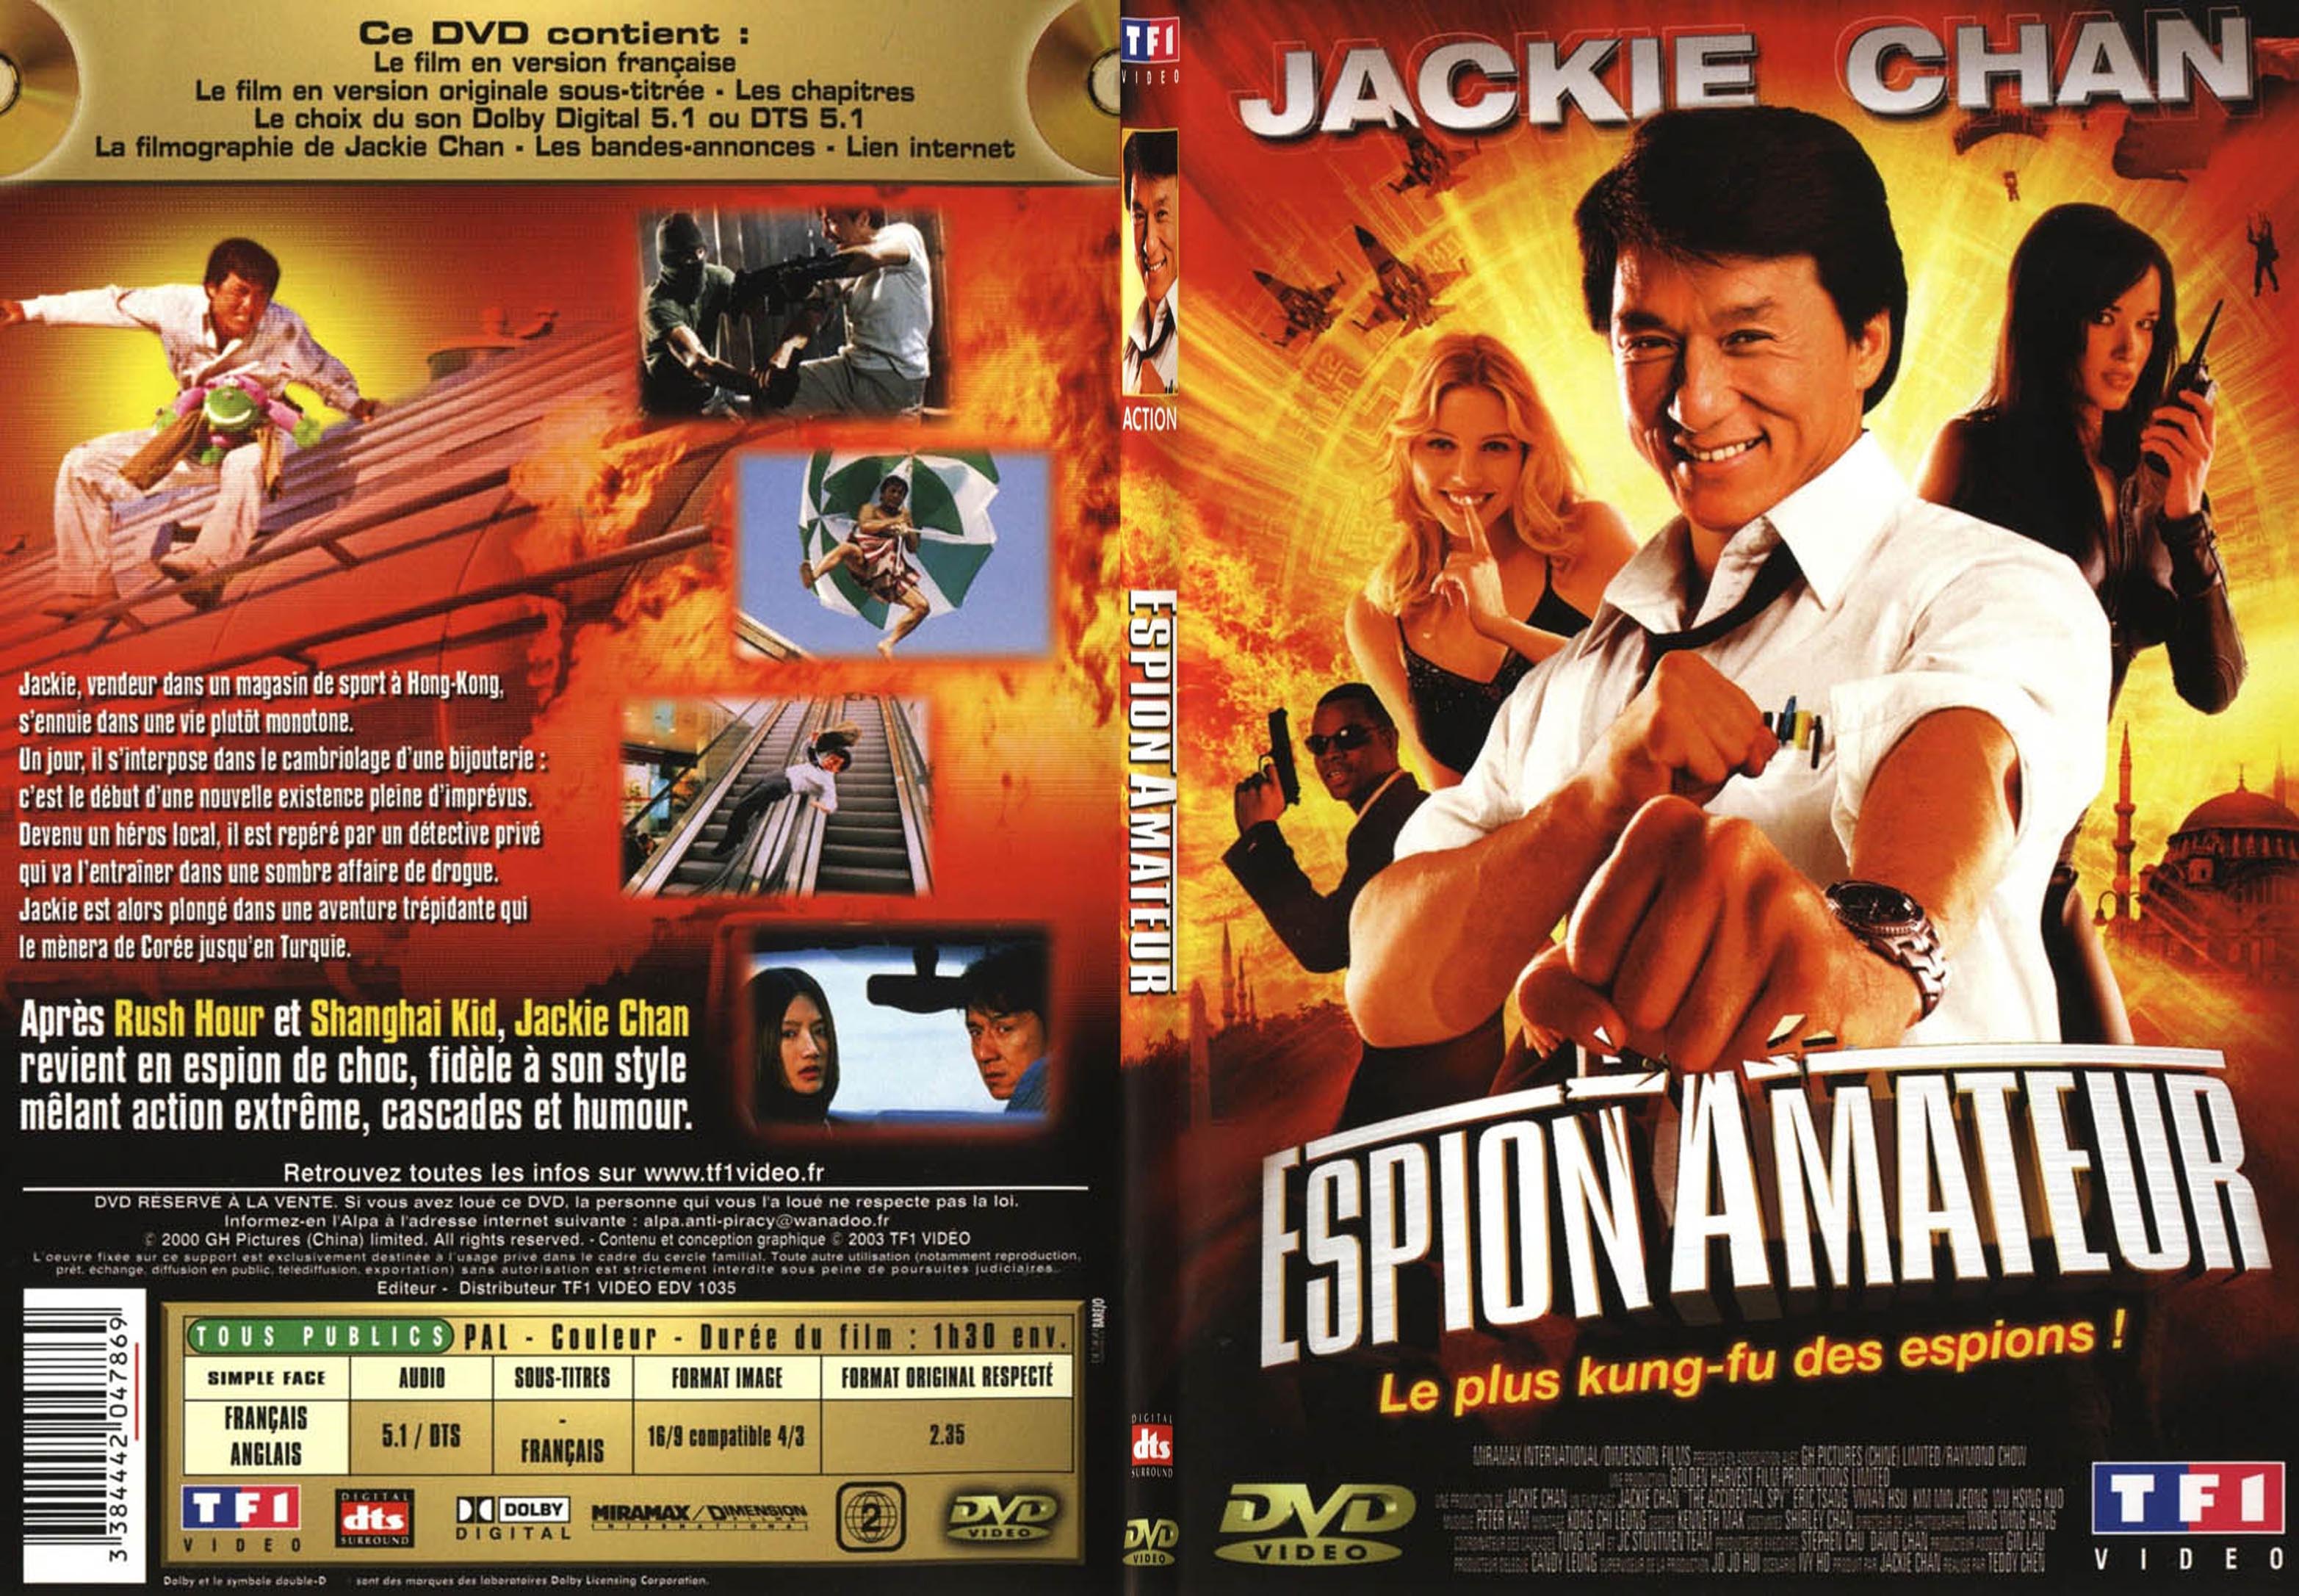 Jaquette DVD de Espion amateur - SLIM